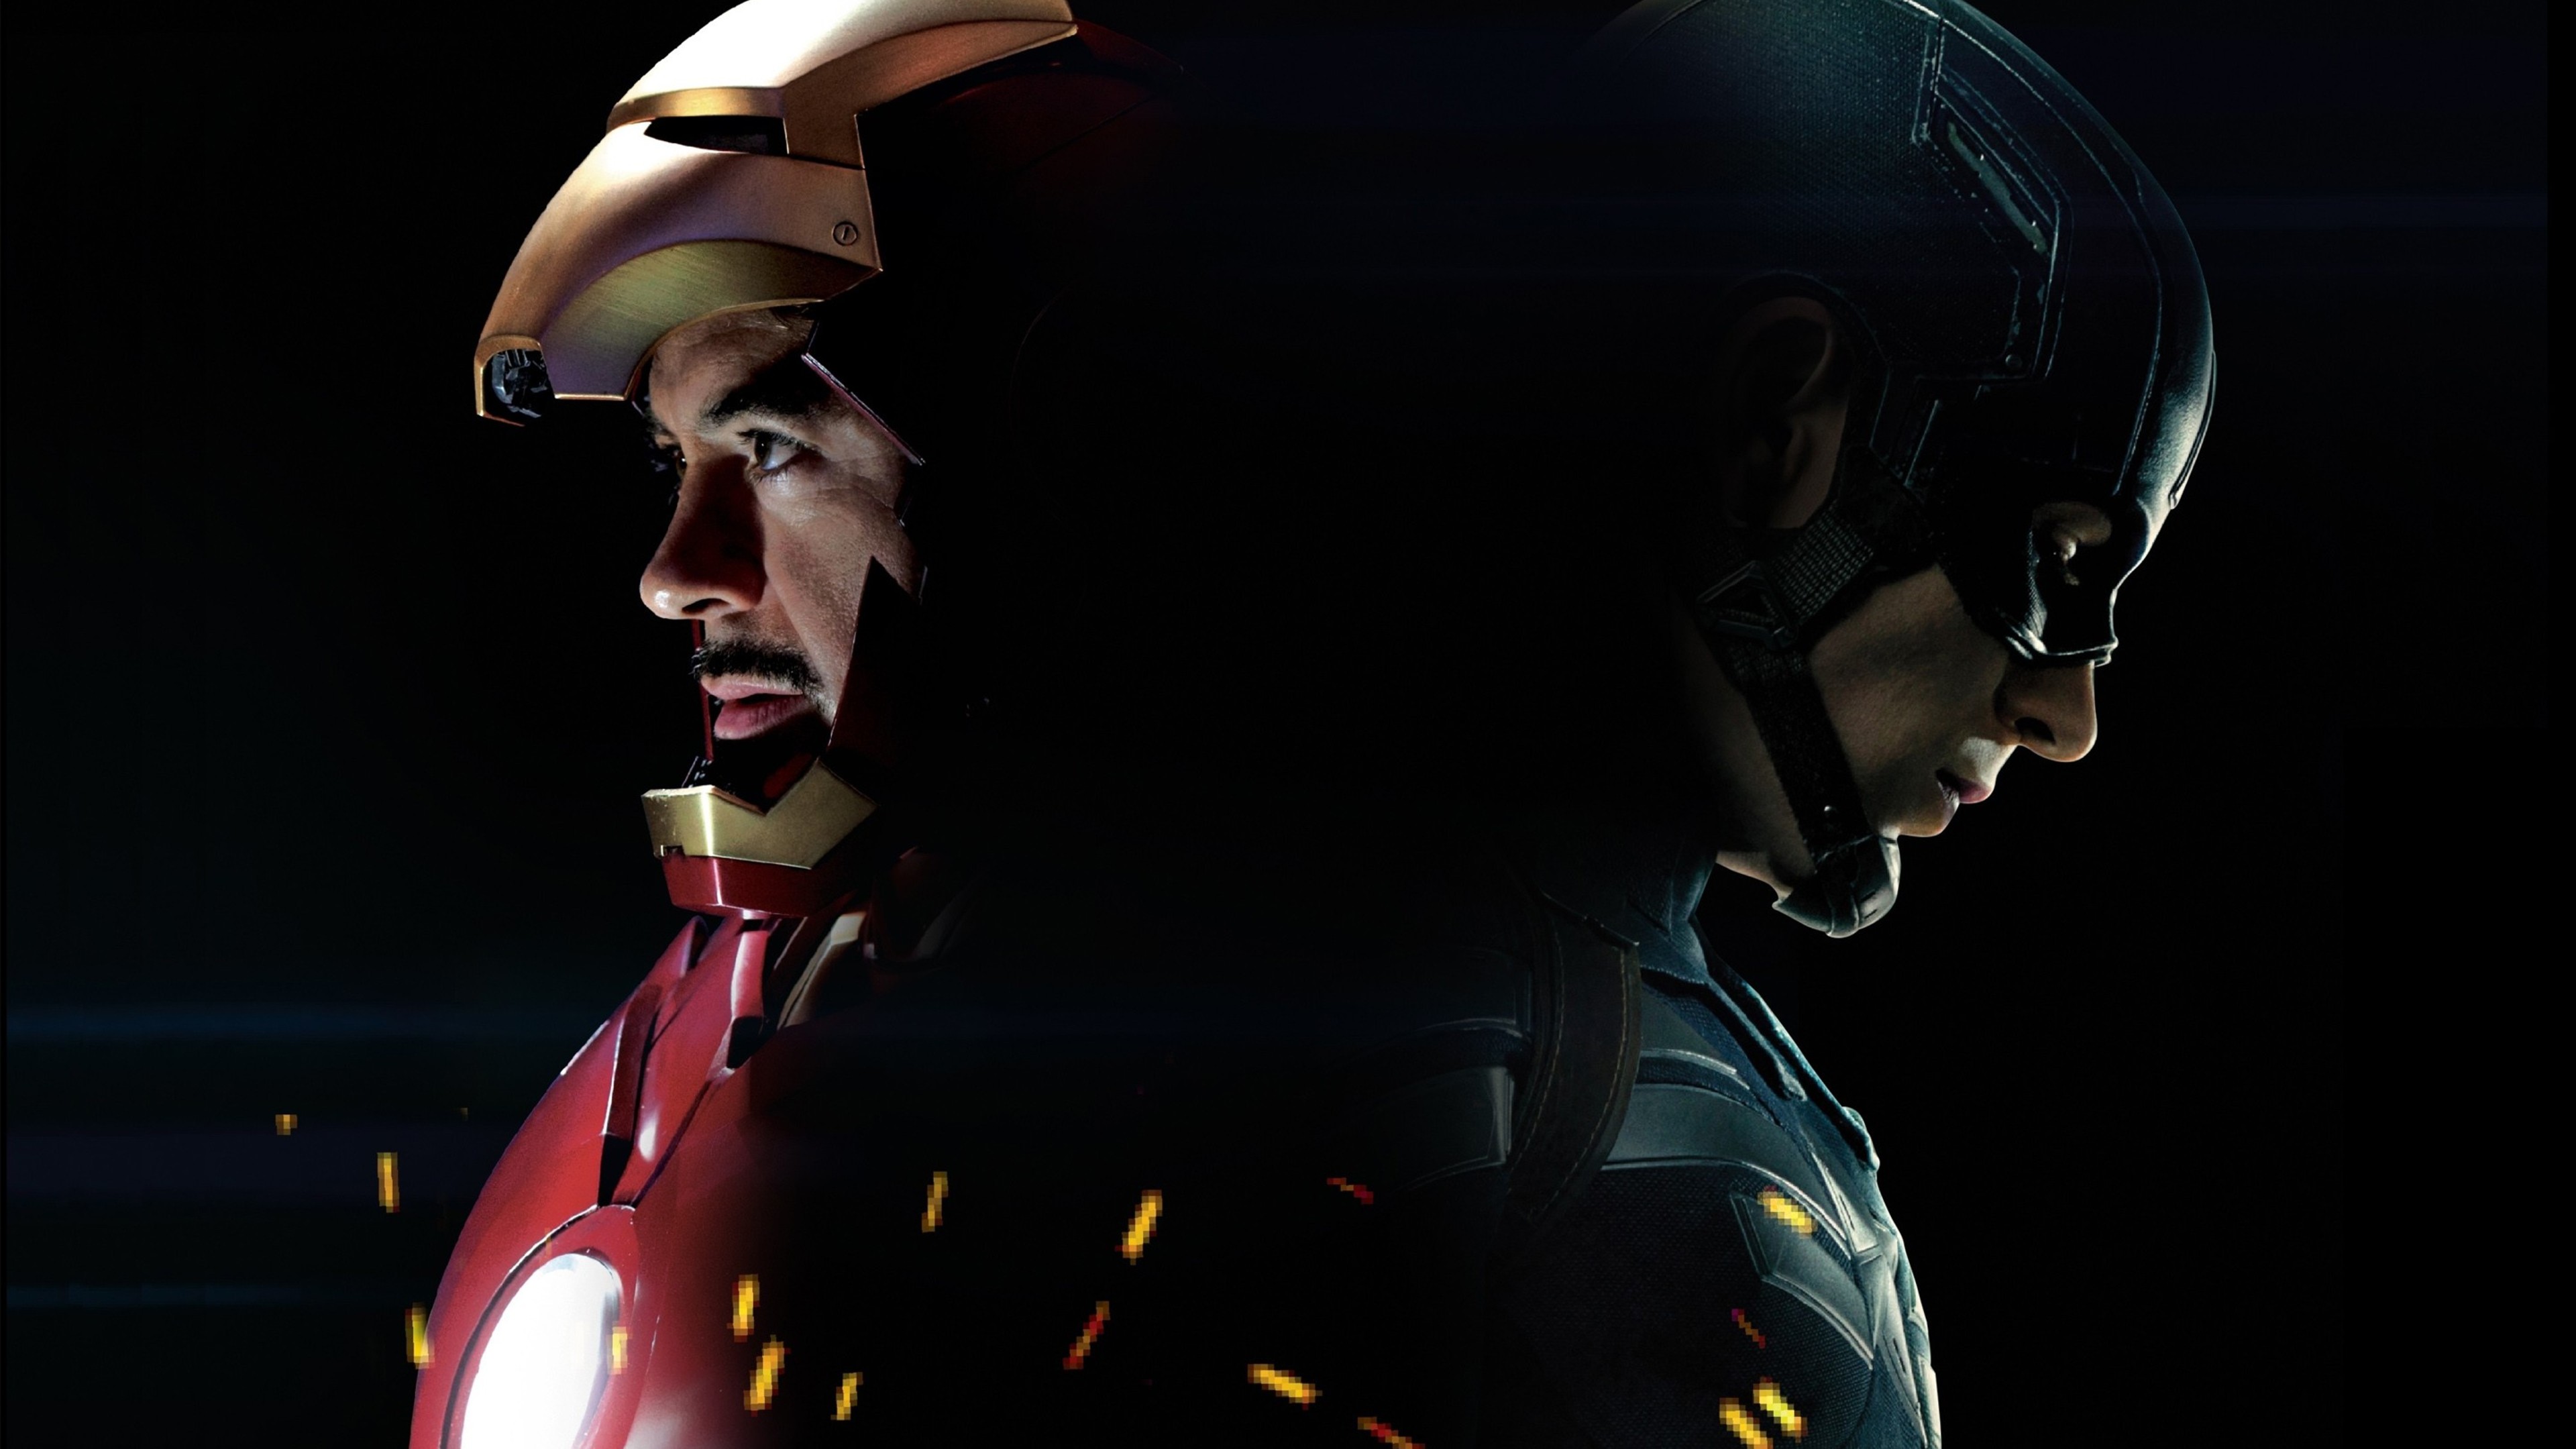 Скачать обои бесплатно Кино, Железный Человек, Капитан Америка, Первый Мститель: Война Героев картинка на рабочий стол ПК